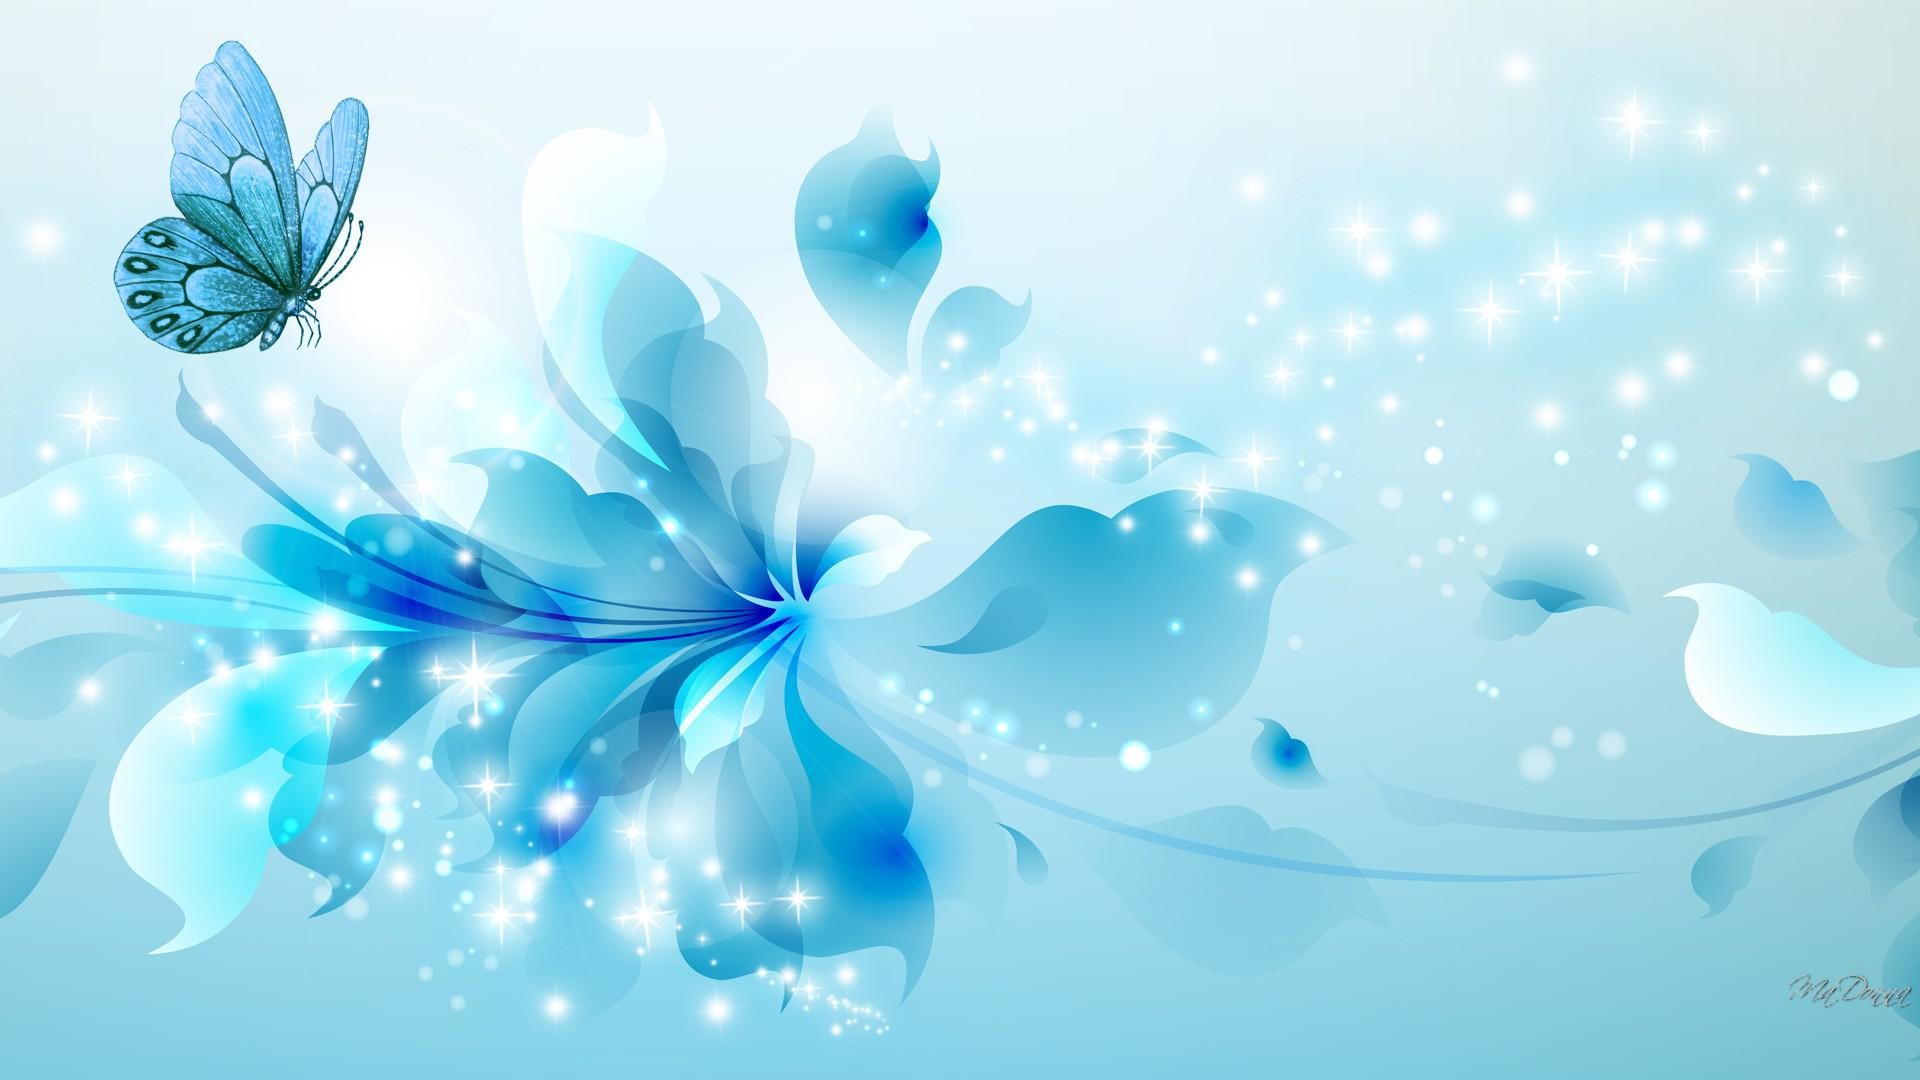 1920x1080 HD-aqua-blue-wallpaper-download.jpg (1920Ã1080) | blue flowers | Pinterest  | Wallpaper and Photo manipulation